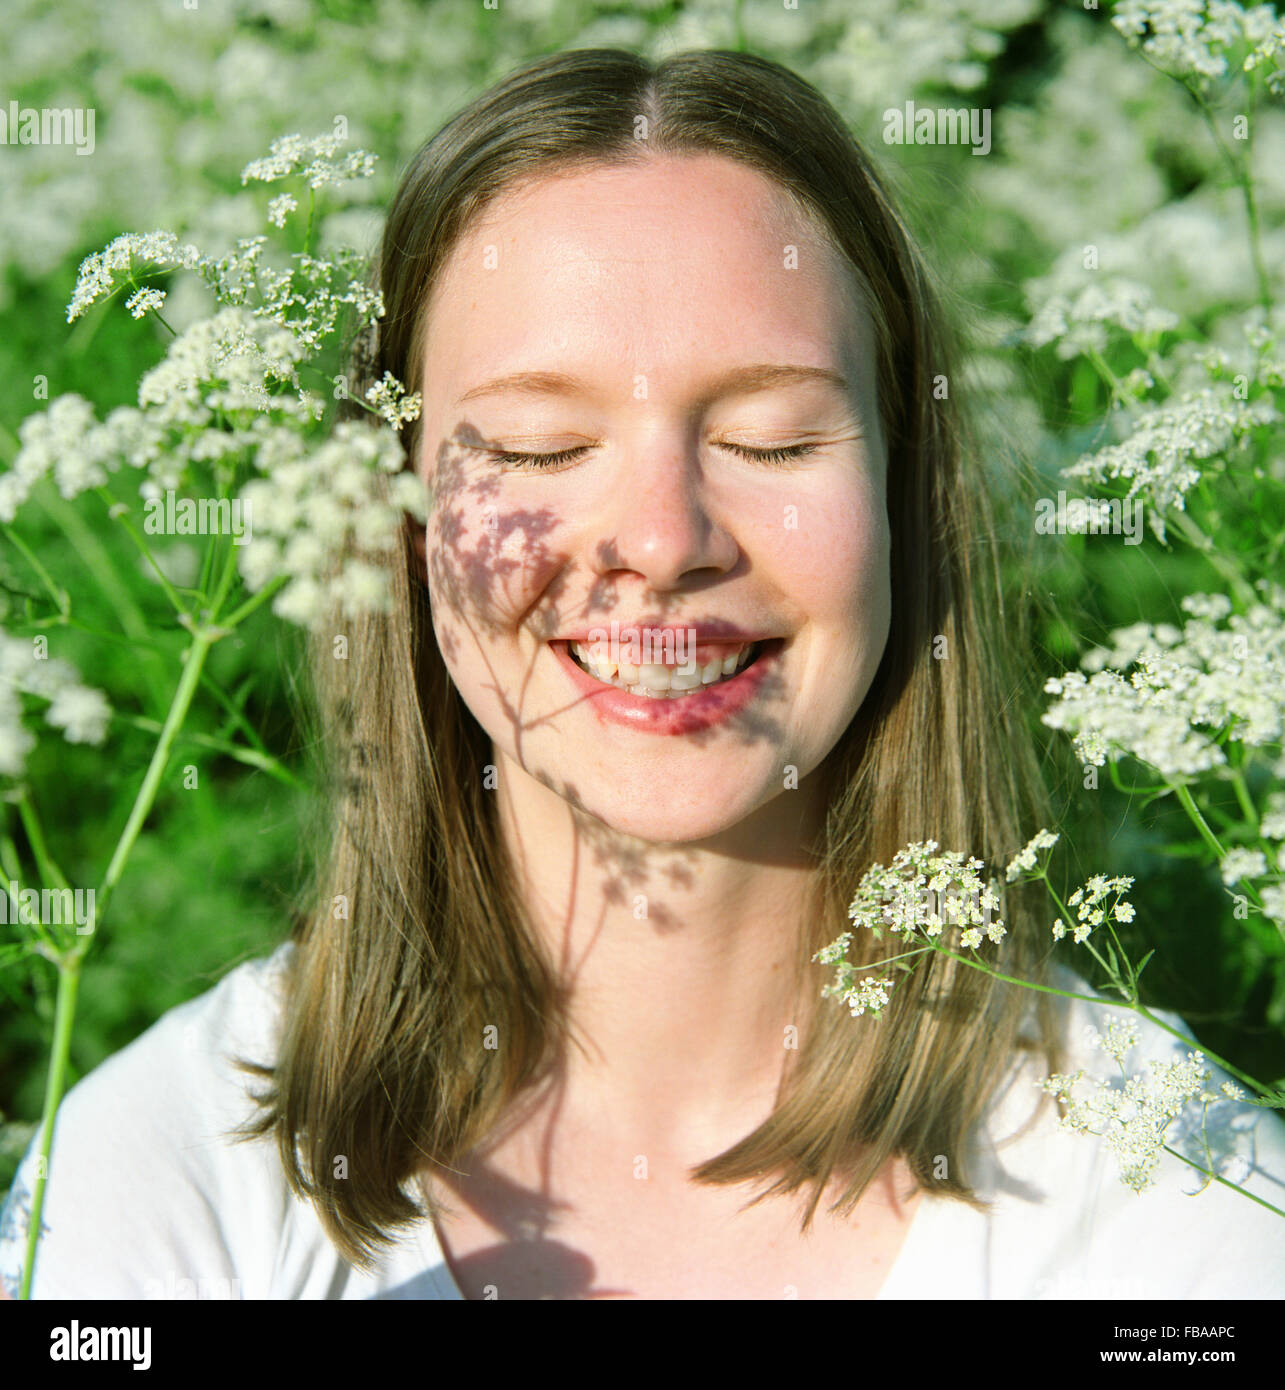 Finnland, Porträt der jungen Frau mit geschlossenen Augen und toothy Lächeln Stockfoto